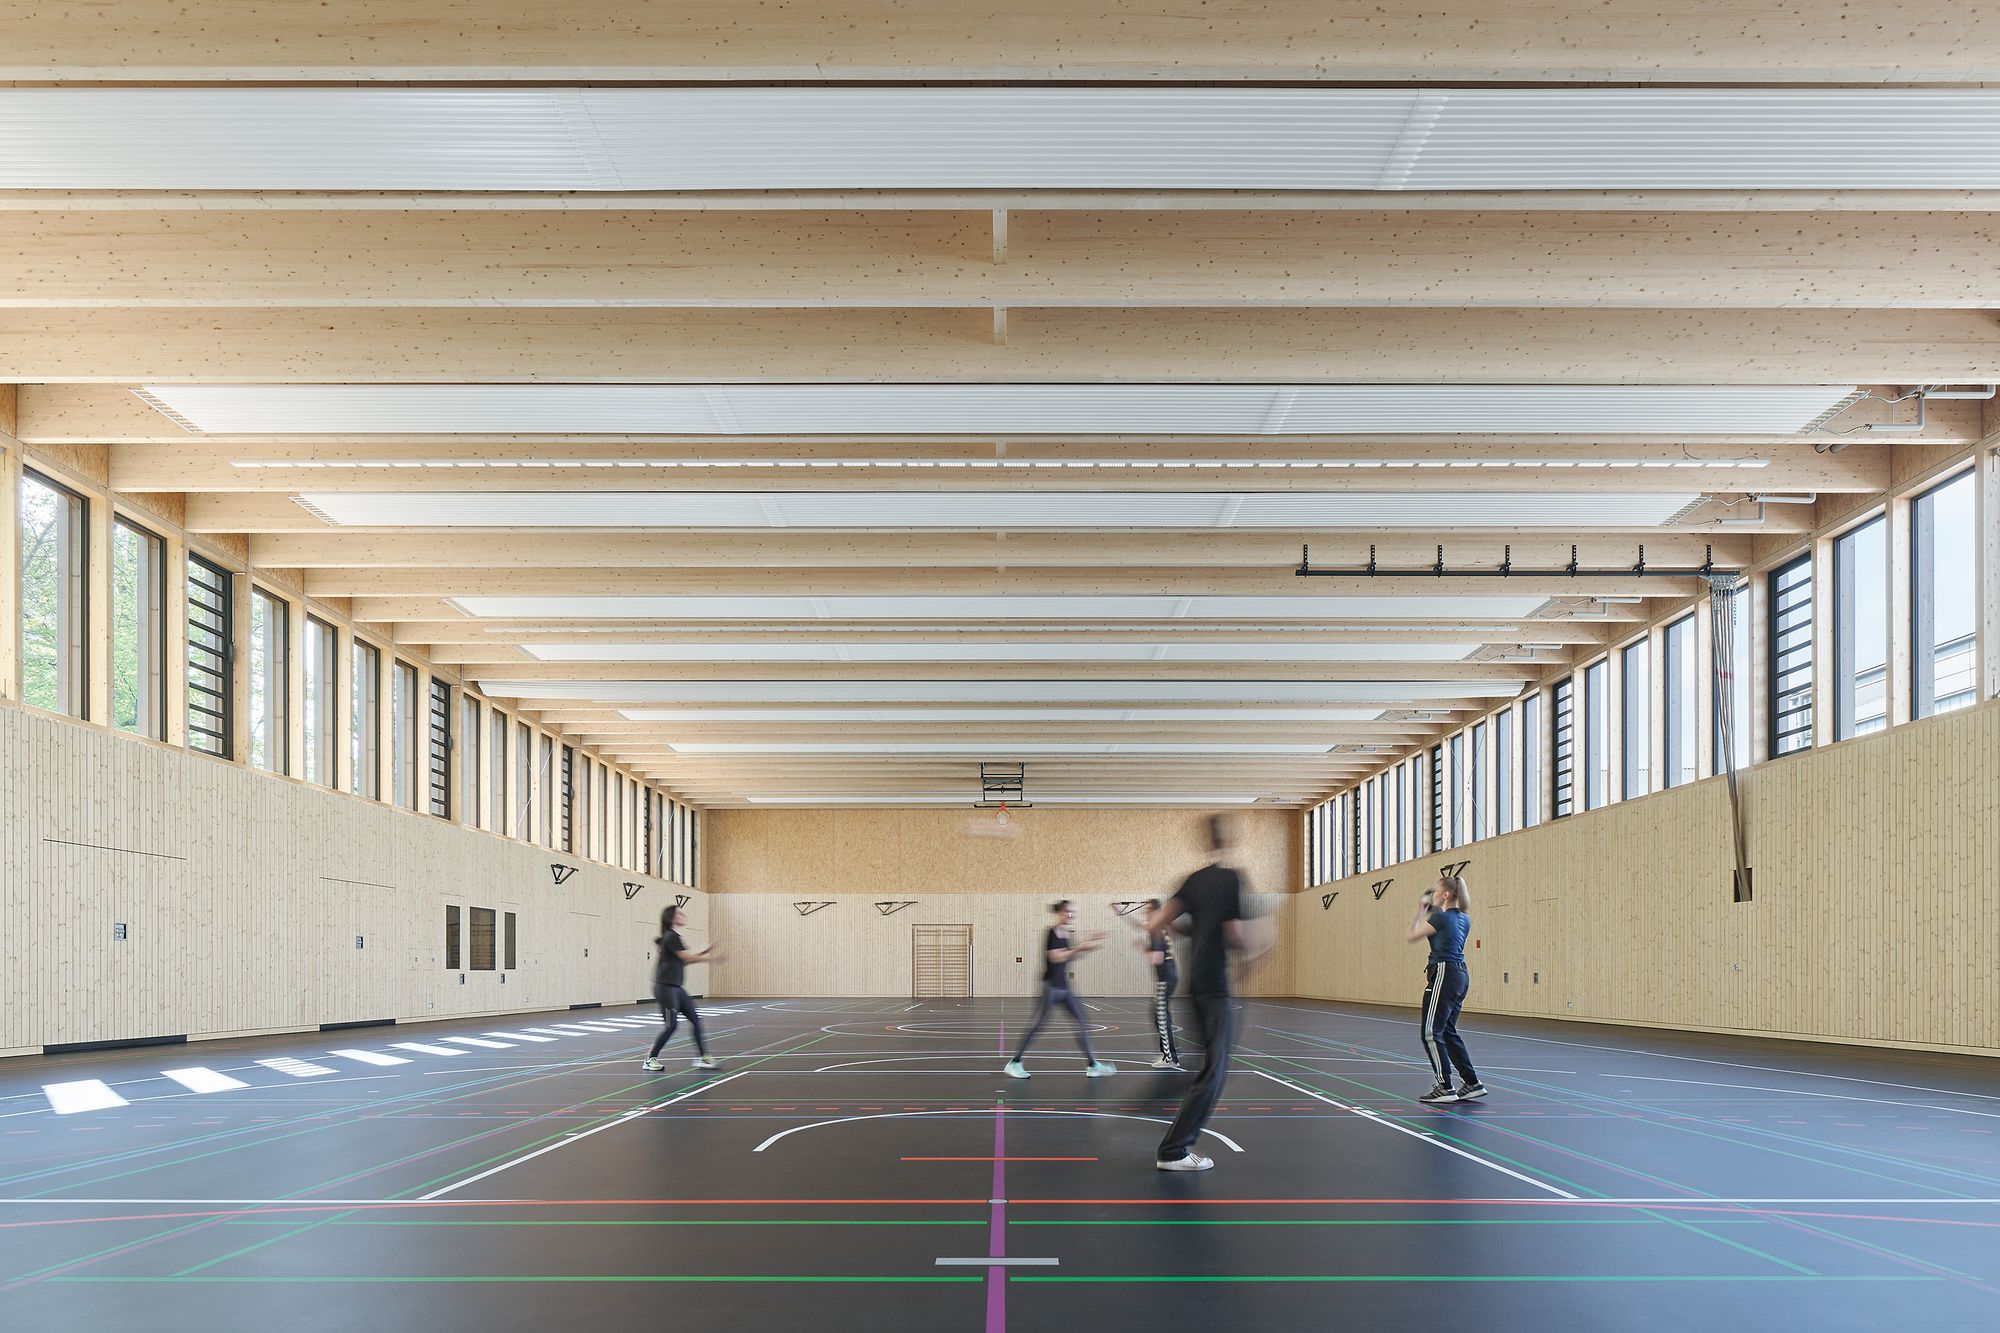 图片[6]|鲁特州立体育学校-体育馆|ART-Arrakis | 建筑室内设计的创新与灵感